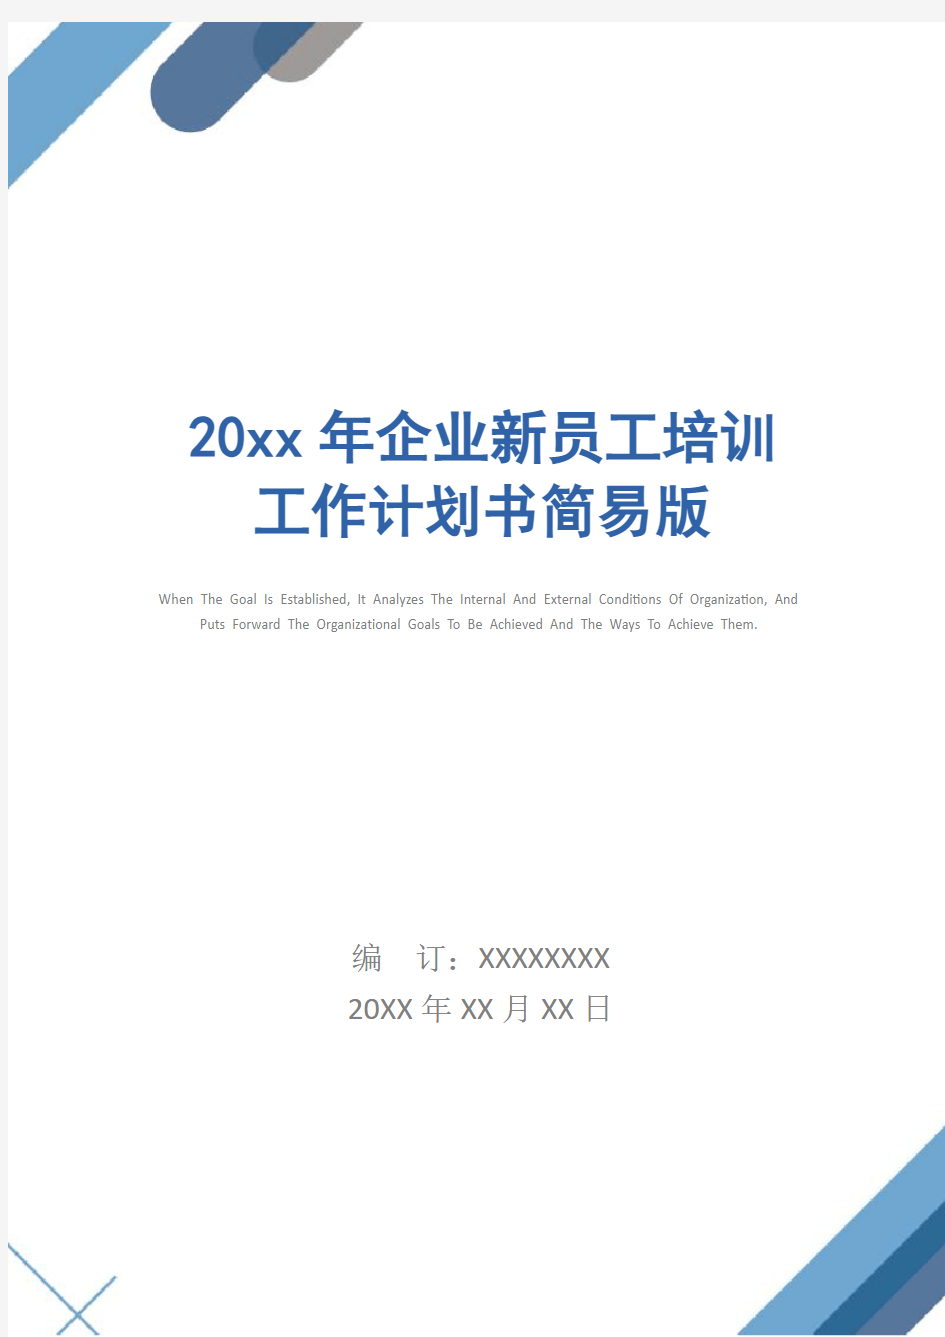 20xx年企业新员工培训工作计划书简易版_1